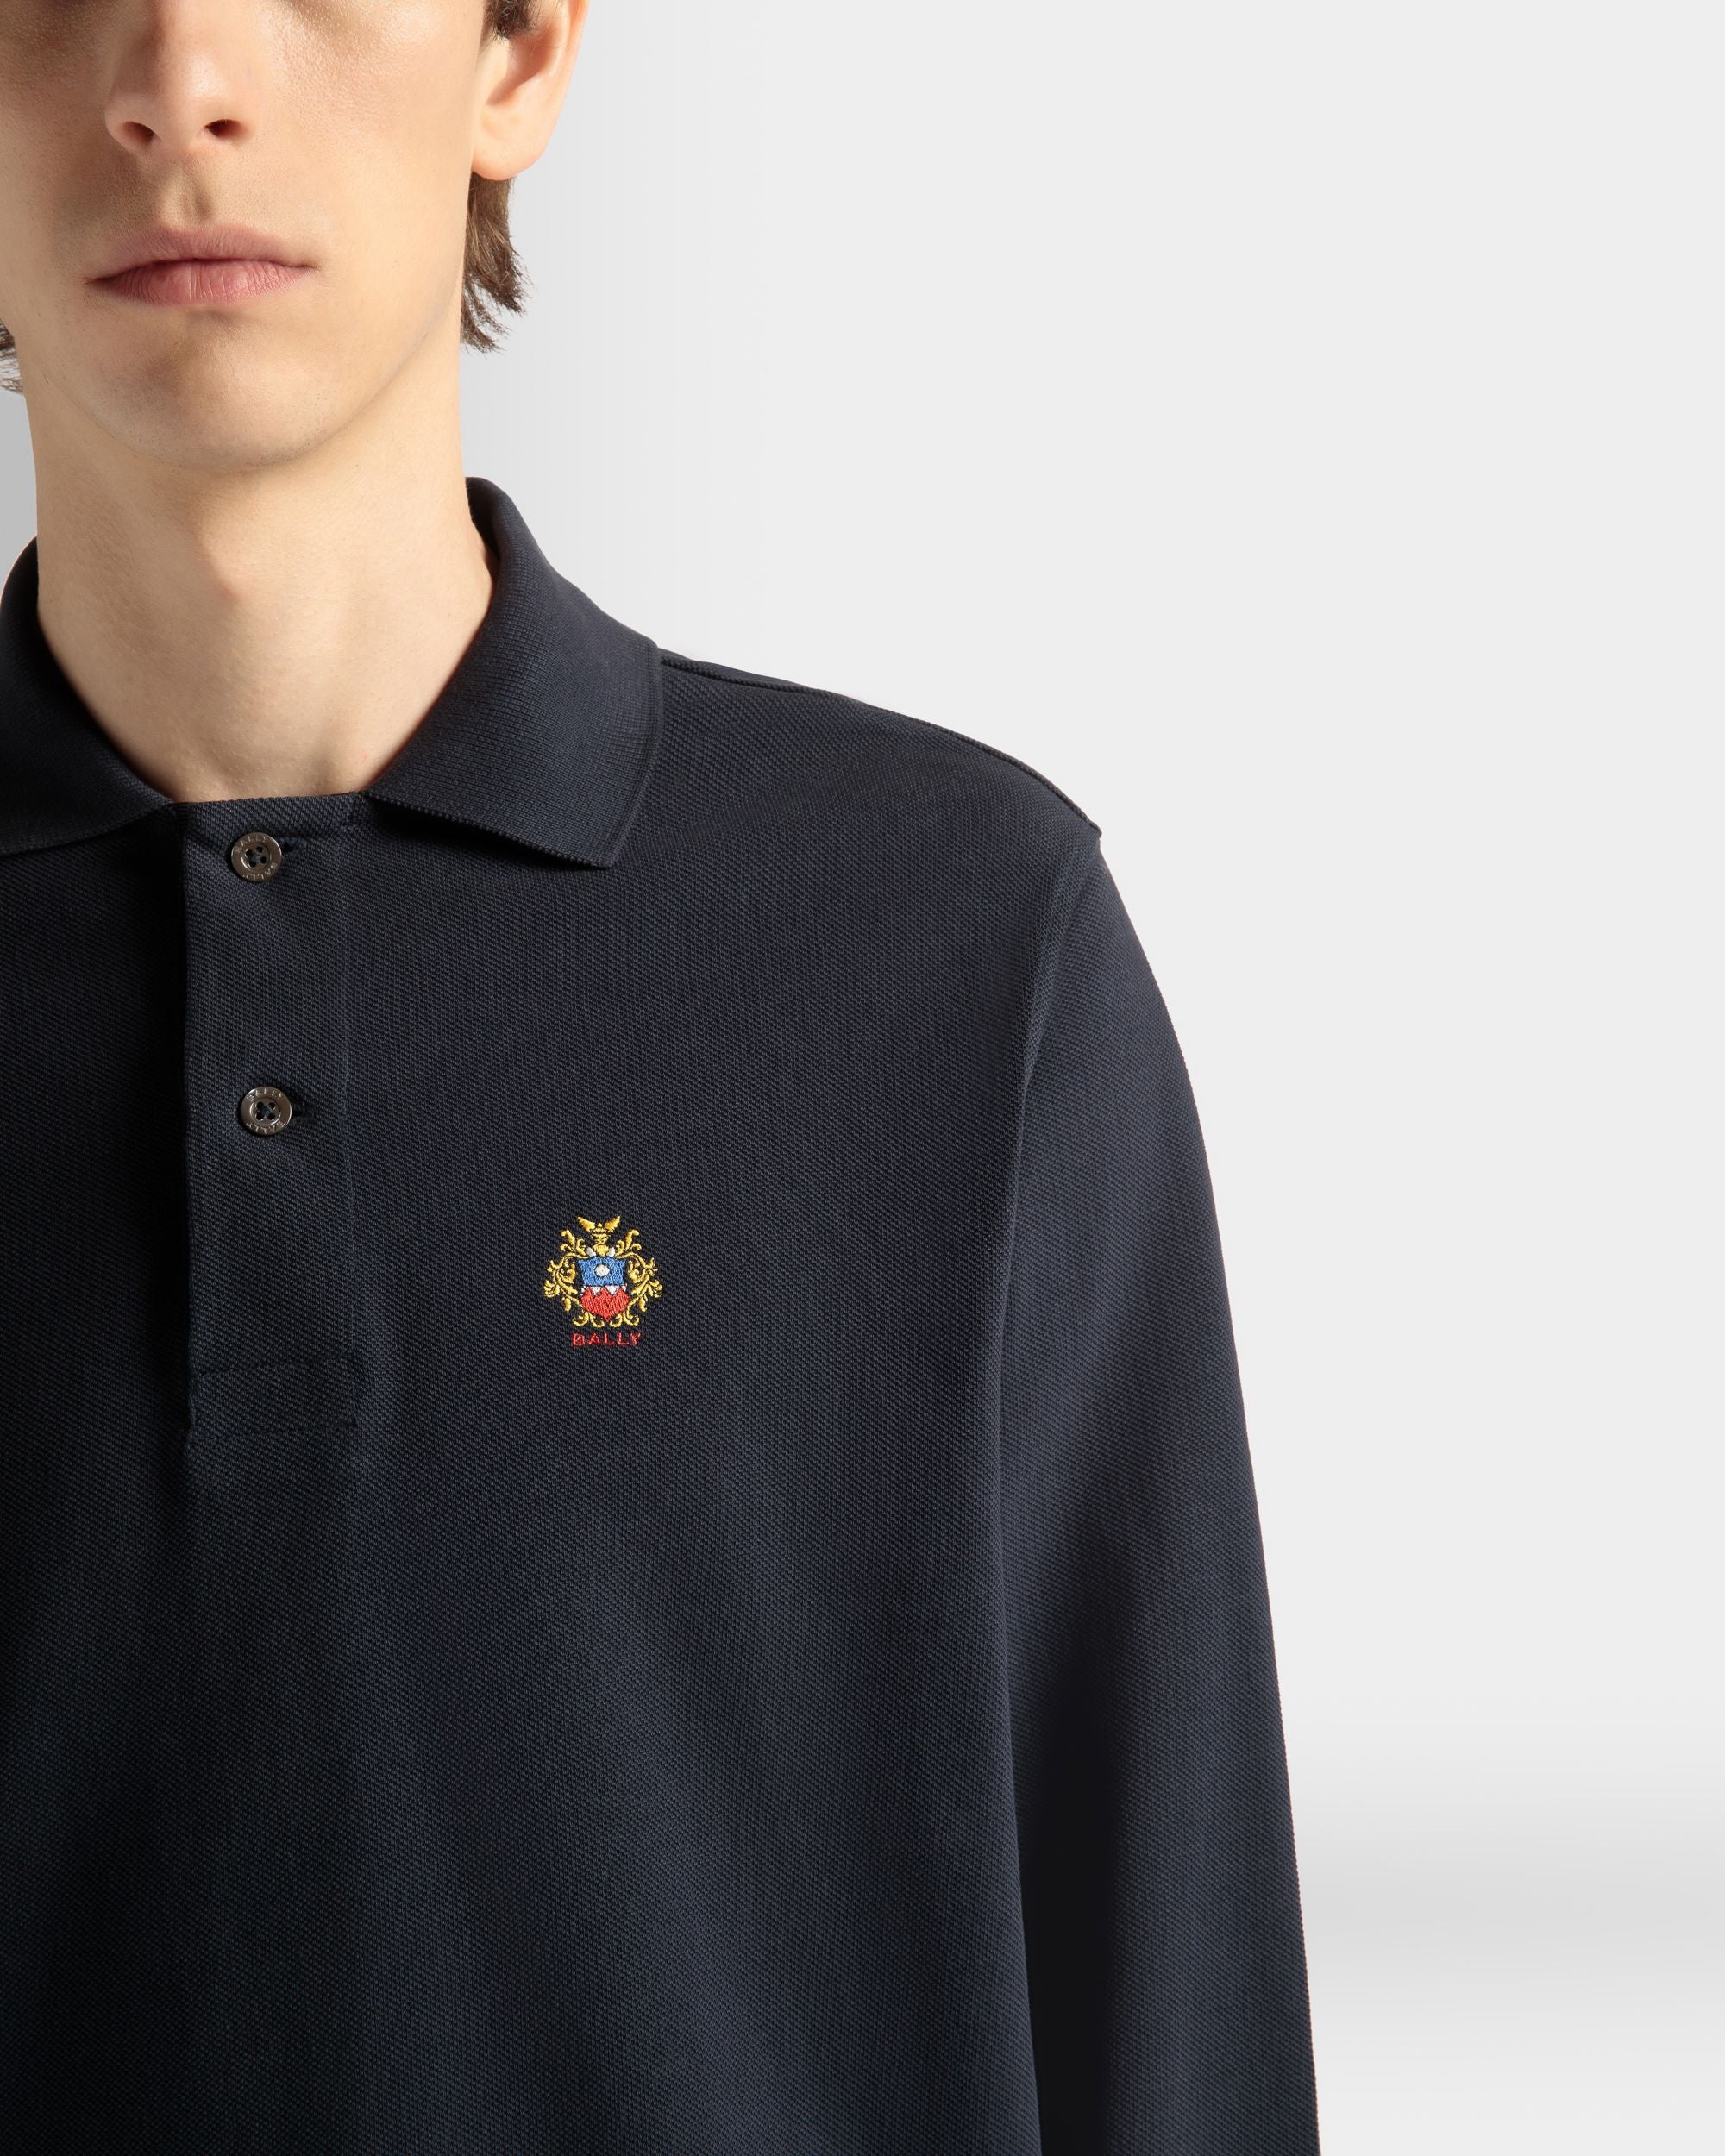 Langärmeliges Poloshirt für Herren aus Baumwolle in Navy Blue | Bally | Model getragen Detail